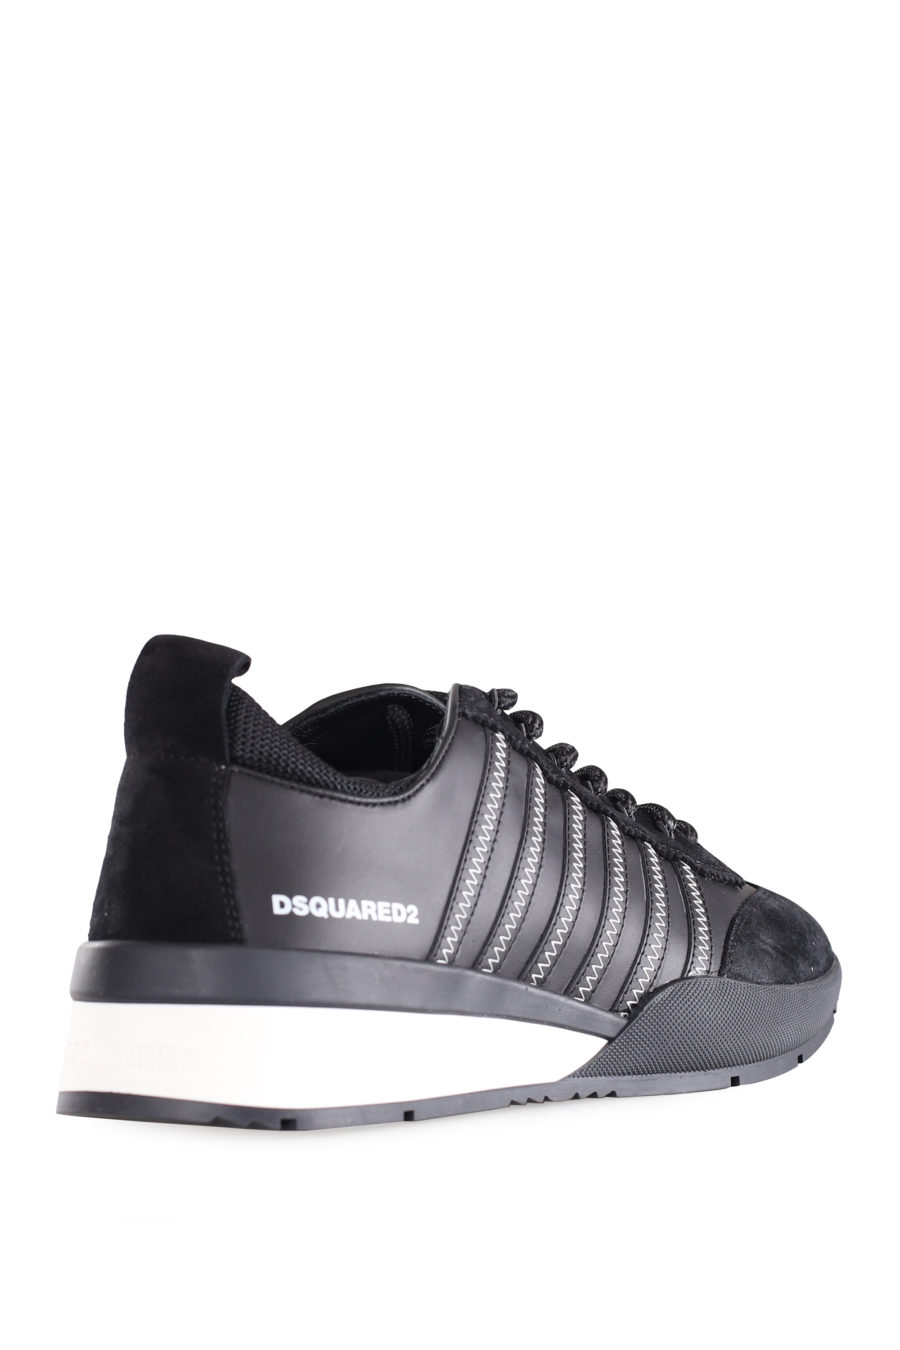 Zapatillas negras con lineas negras y logo blanco pequeño - IMG 9558